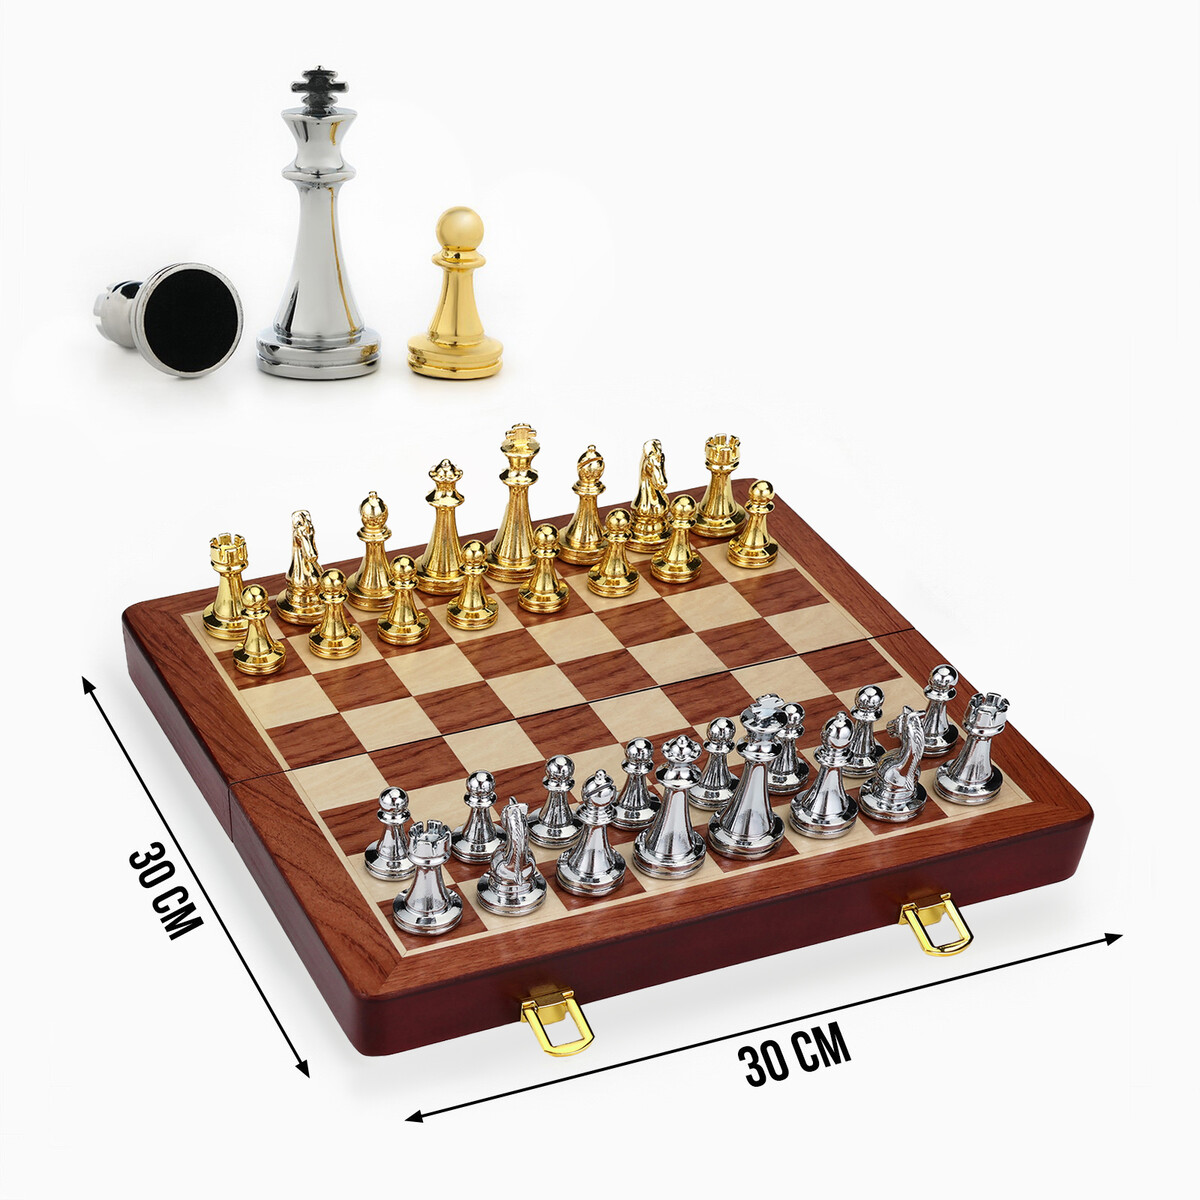 Шахматы сувенирные, деревянная доска 30 х 30 см, металлические фигуры